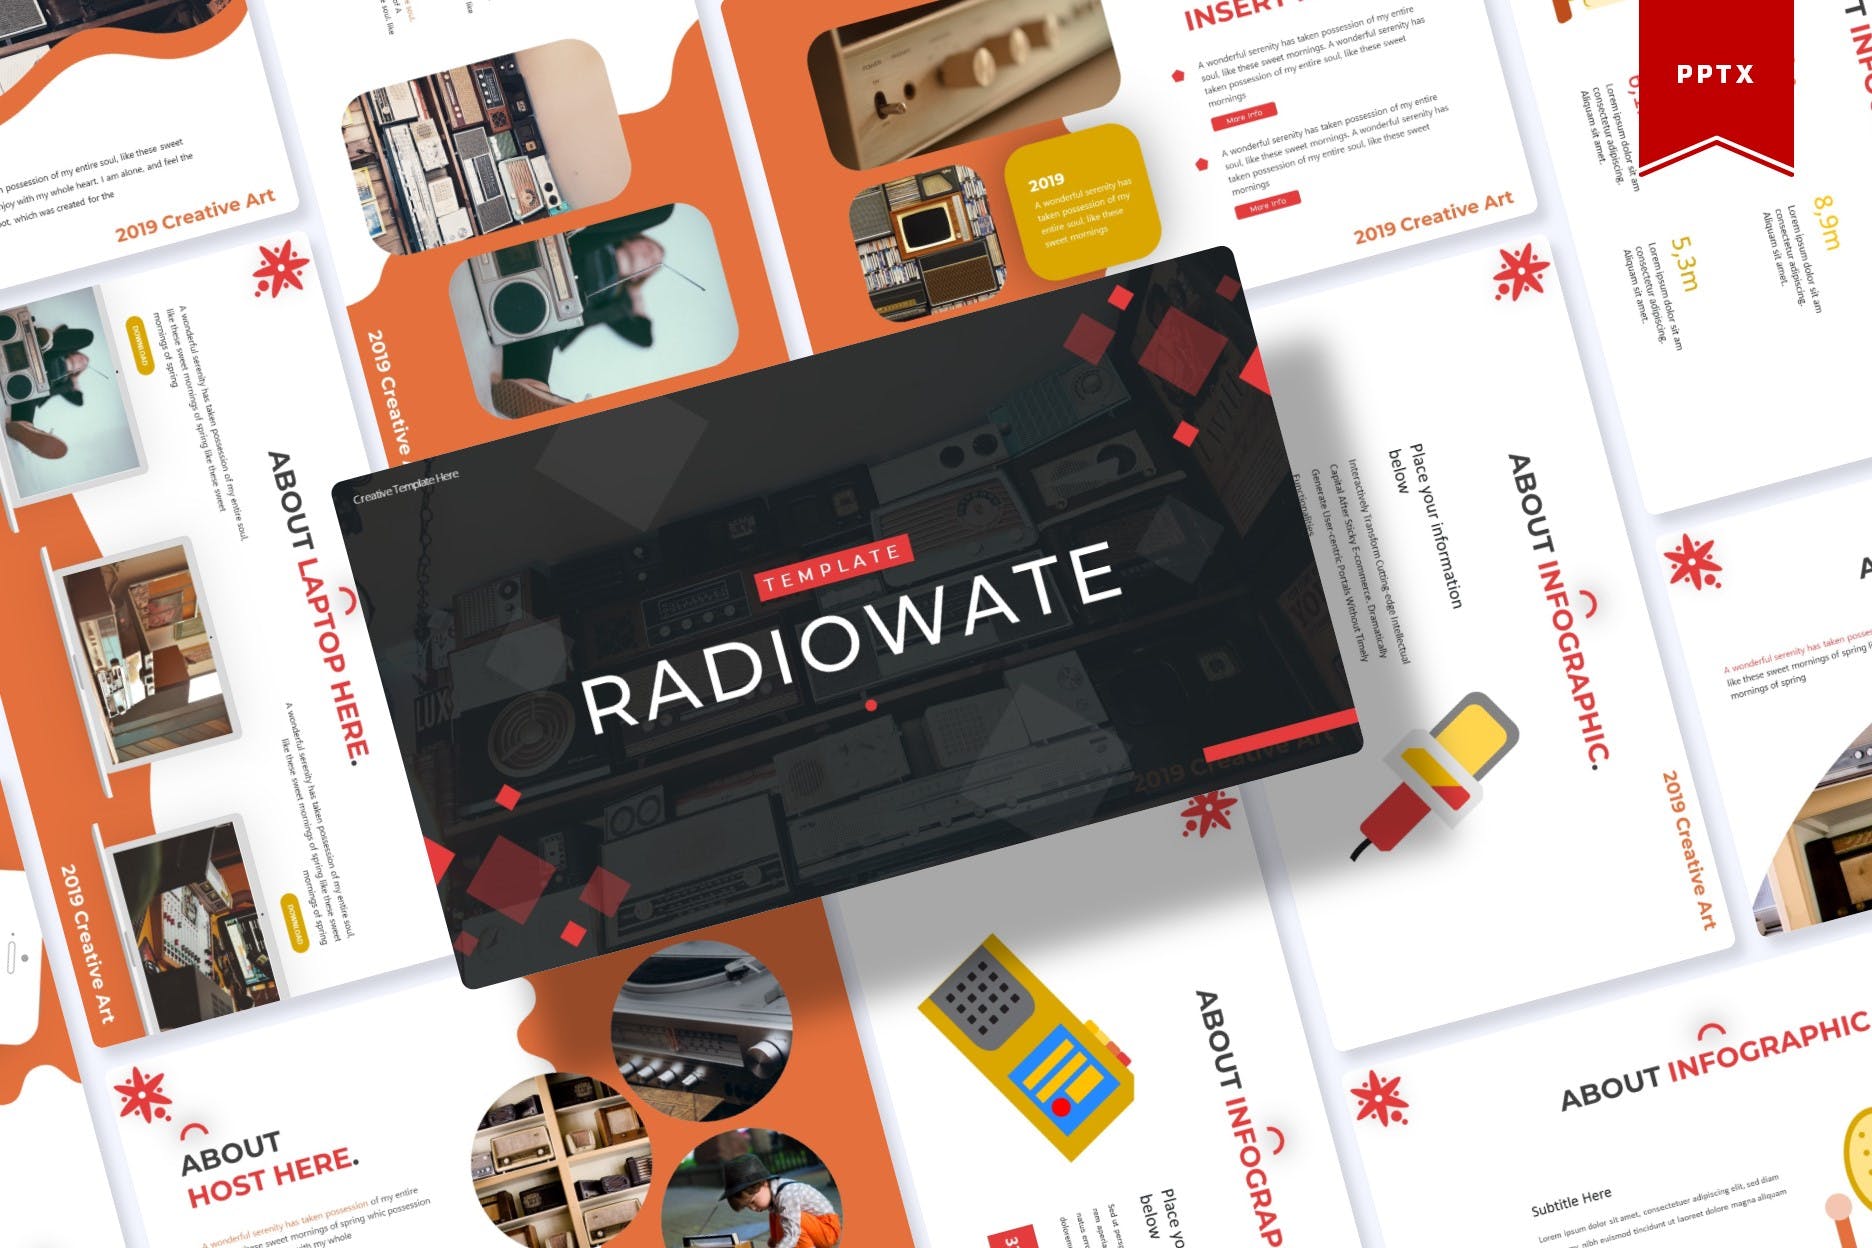 新闻广播行业/摄影录音工作室适用的PPT幻灯片模板 Radiowate | Powerpoint Template插图